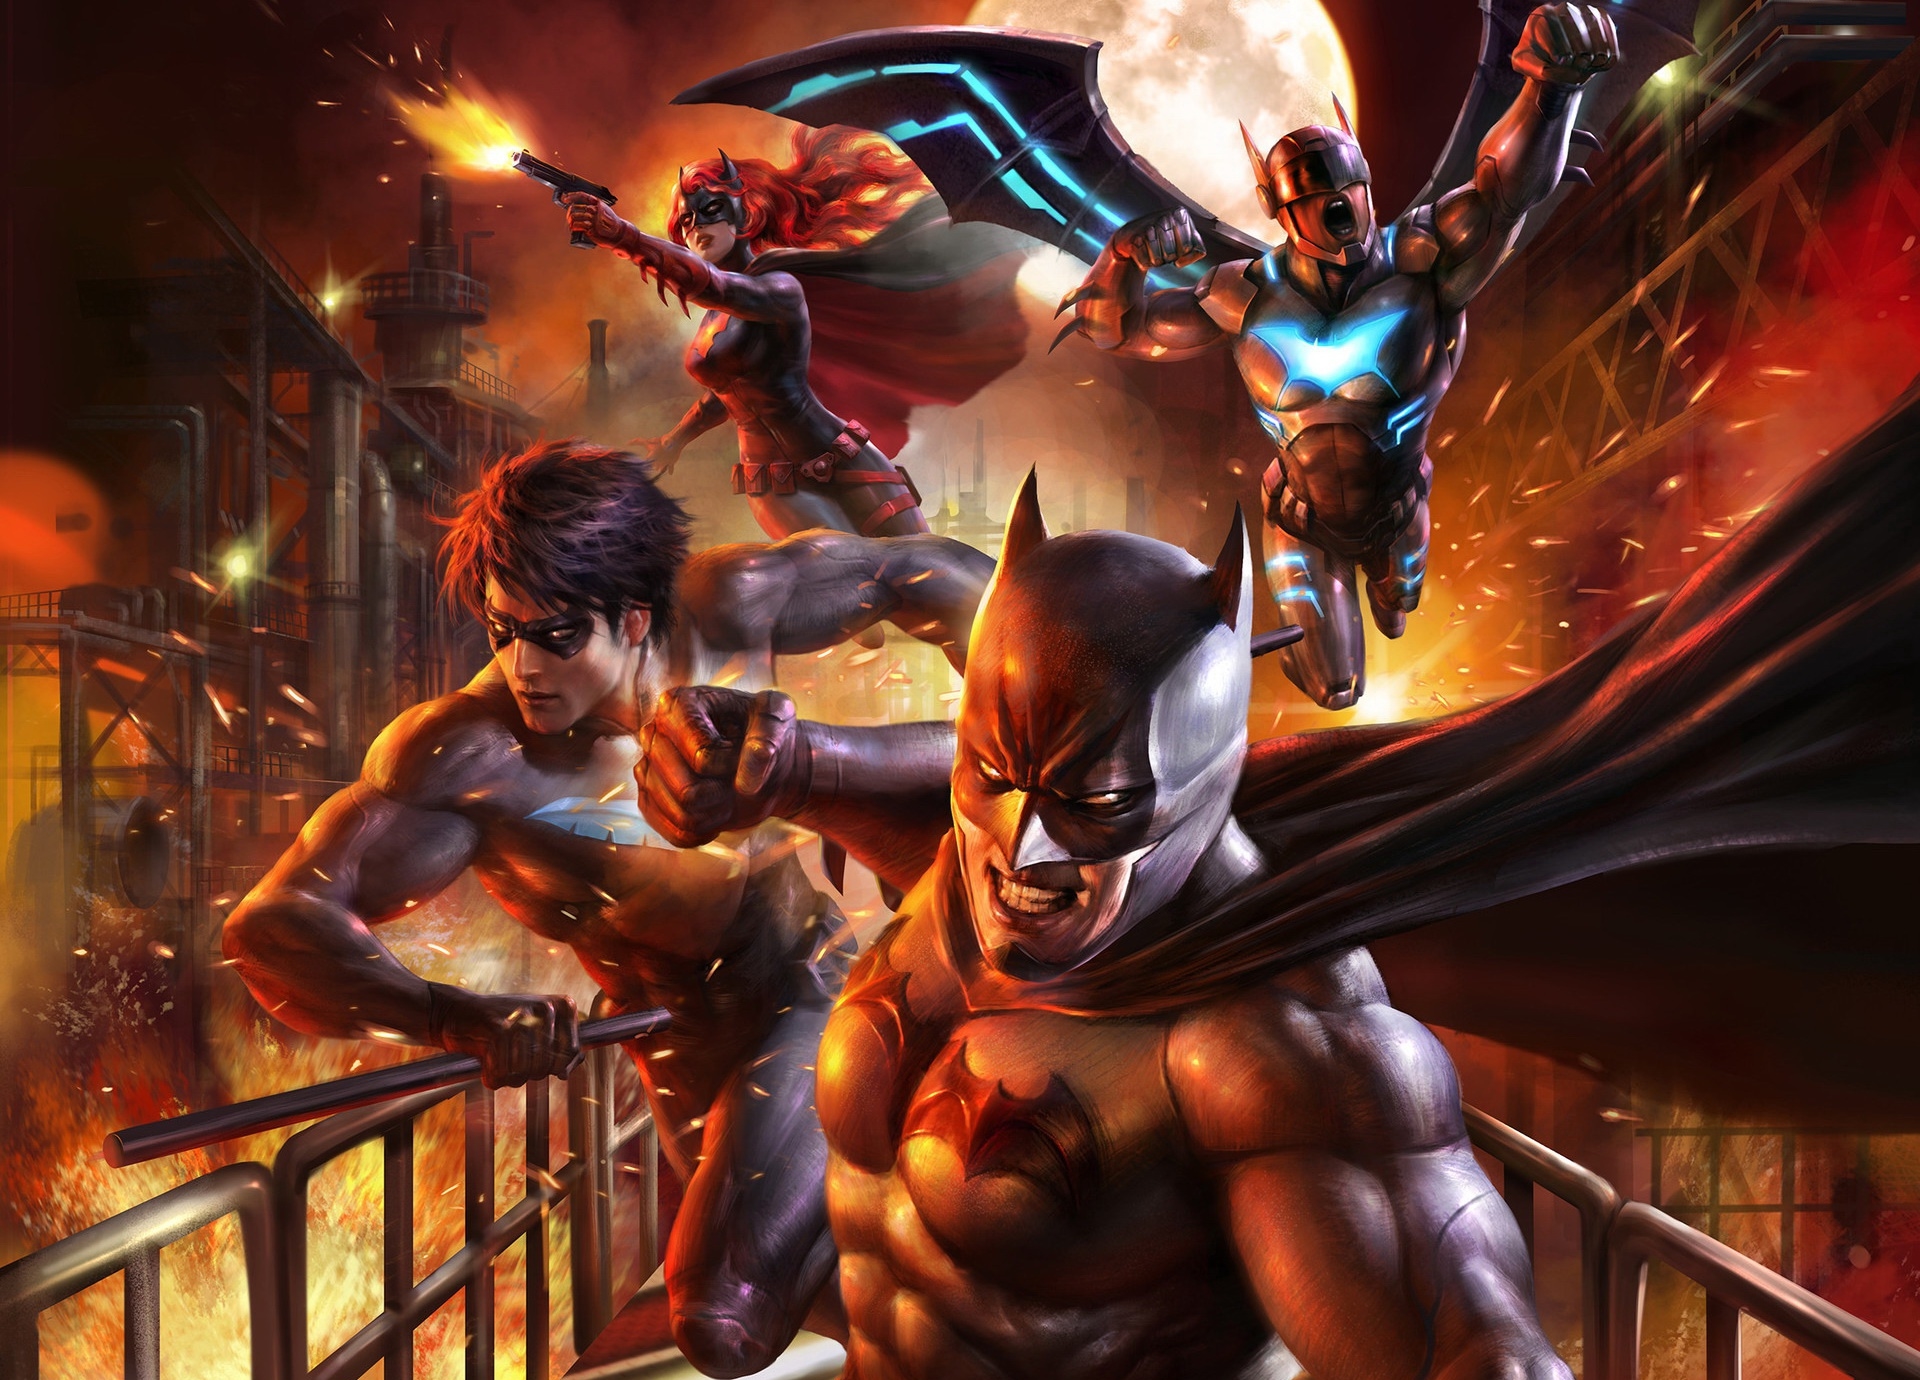 Descarga gratuita de fondo de pantalla para móvil de Historietas, The Batman, Dc Comics, Ala Noche, Batimujer.